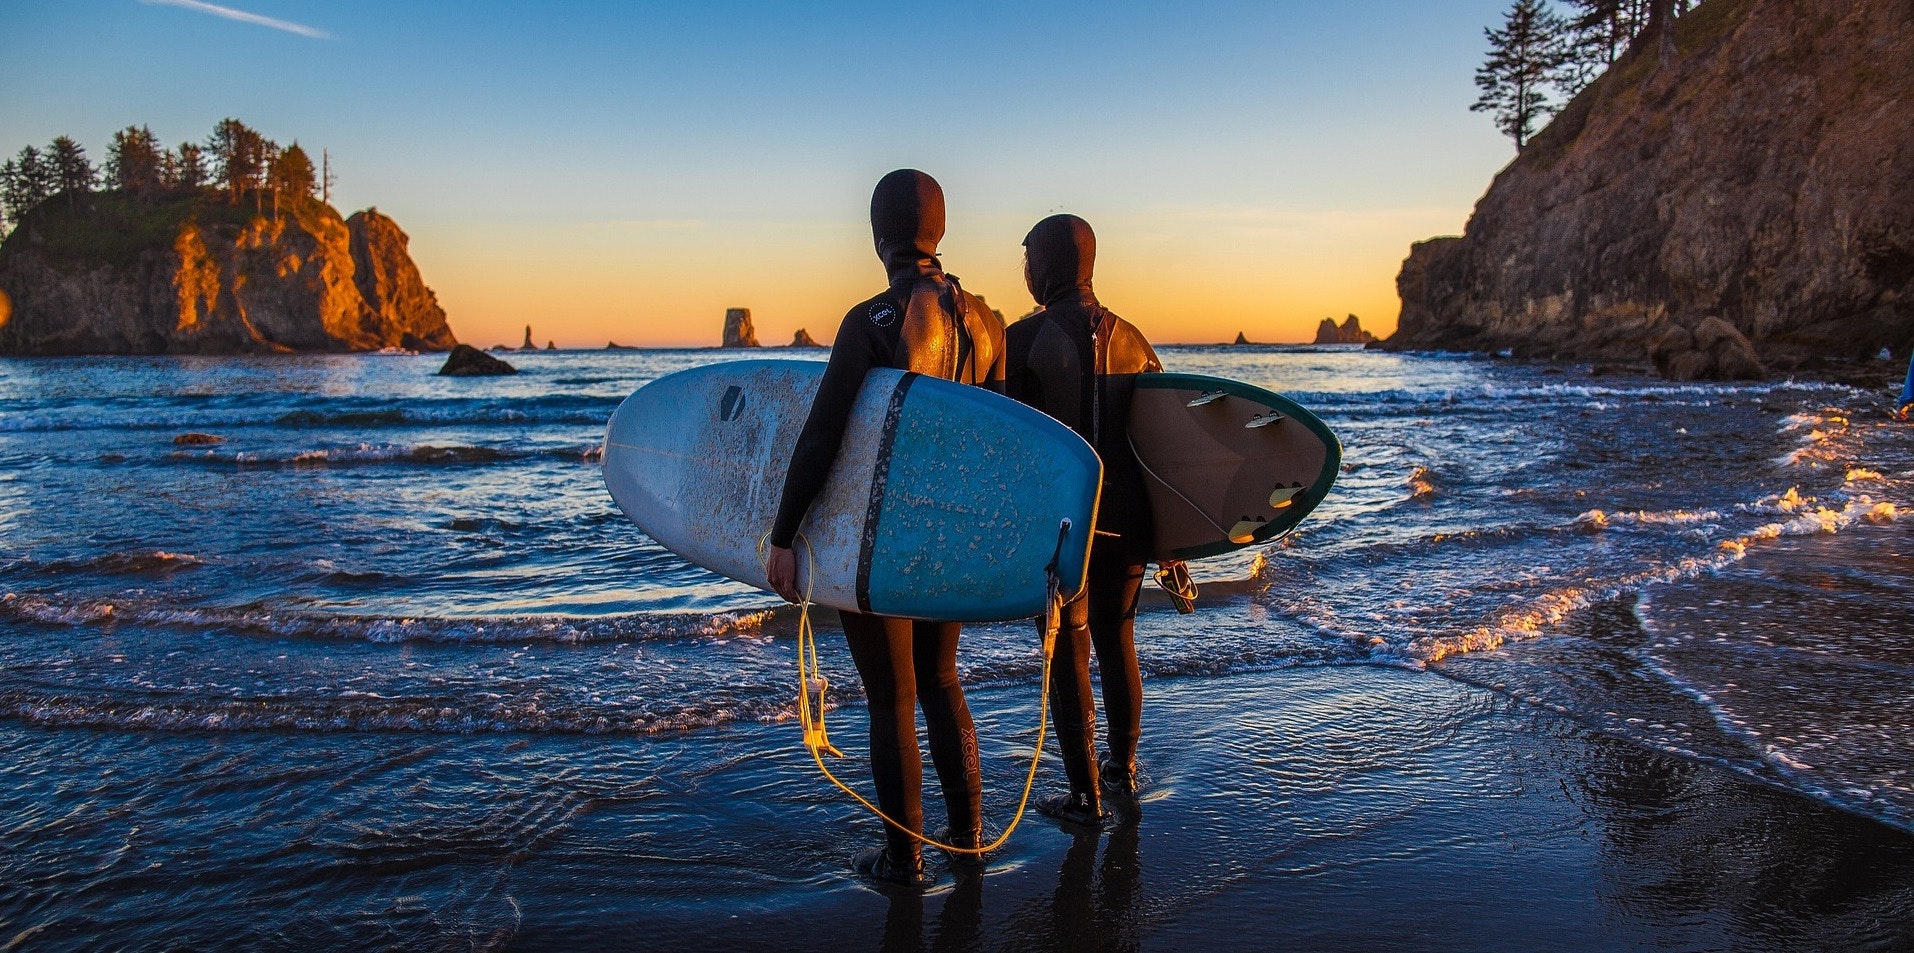 surfers-1.jpg